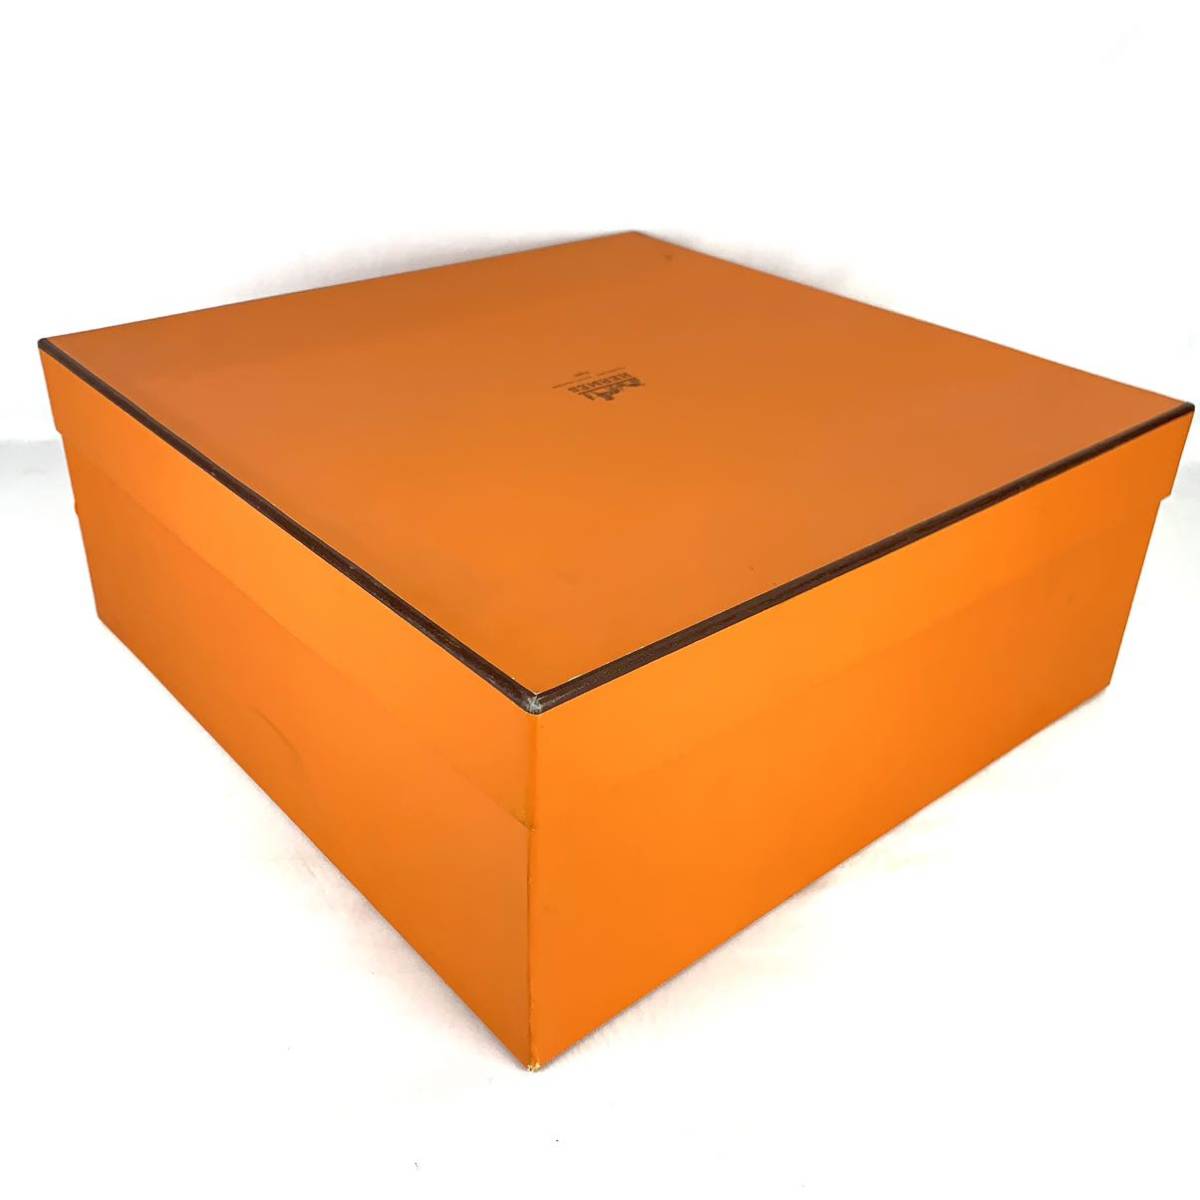 HERMES エルメス 特大 空箱 空き箱 43×43×17.5cm BOX ボックス 化粧箱 大型 オレンジ オレンジボックス バッグ用_画像4